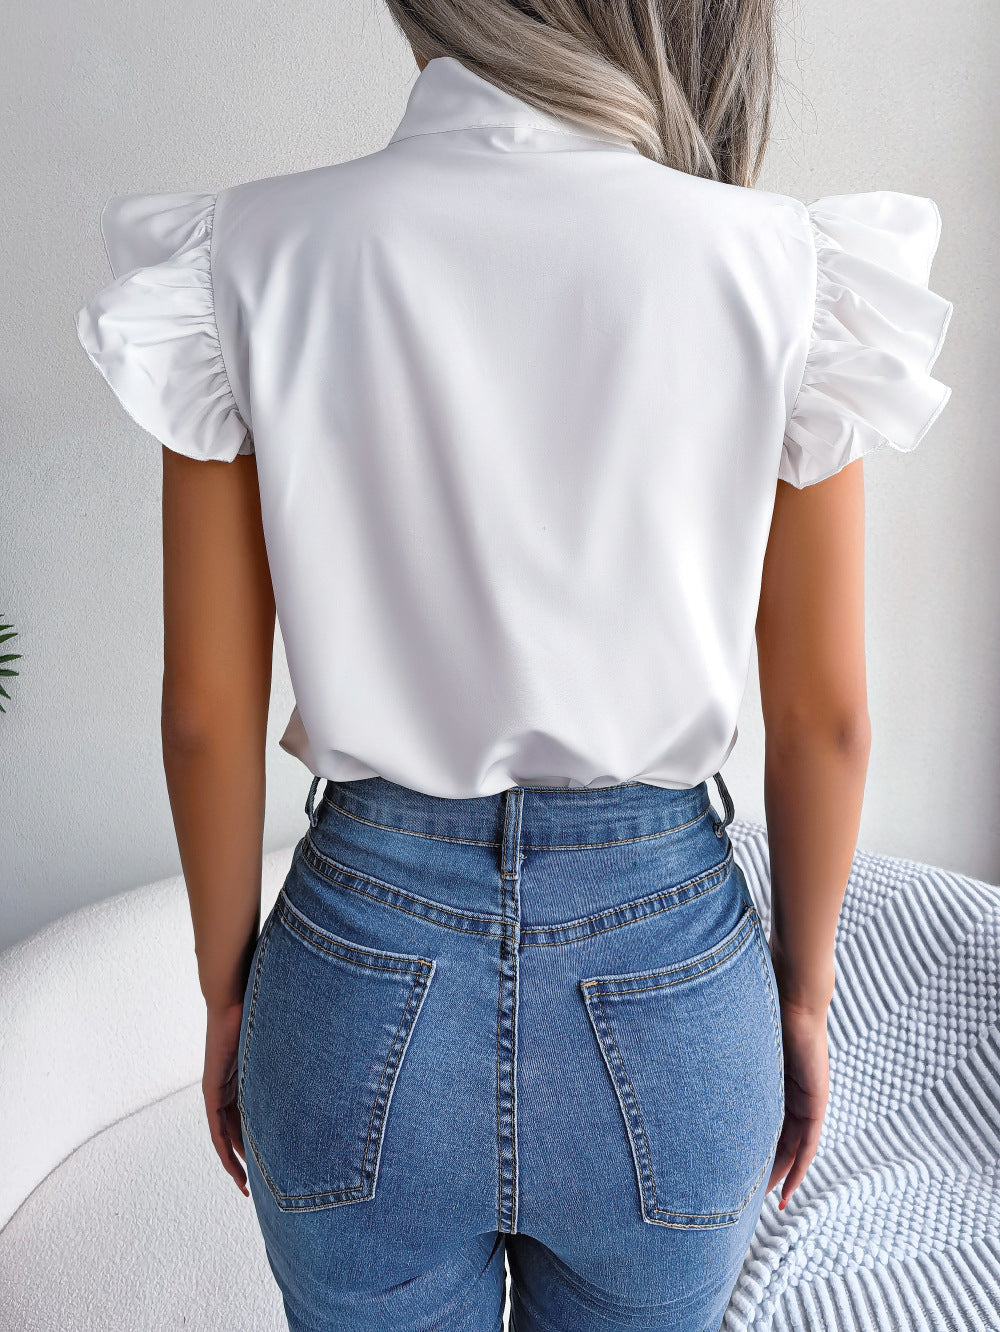 Elegant Ruffled Butterfly Chiffon Shirts for Women